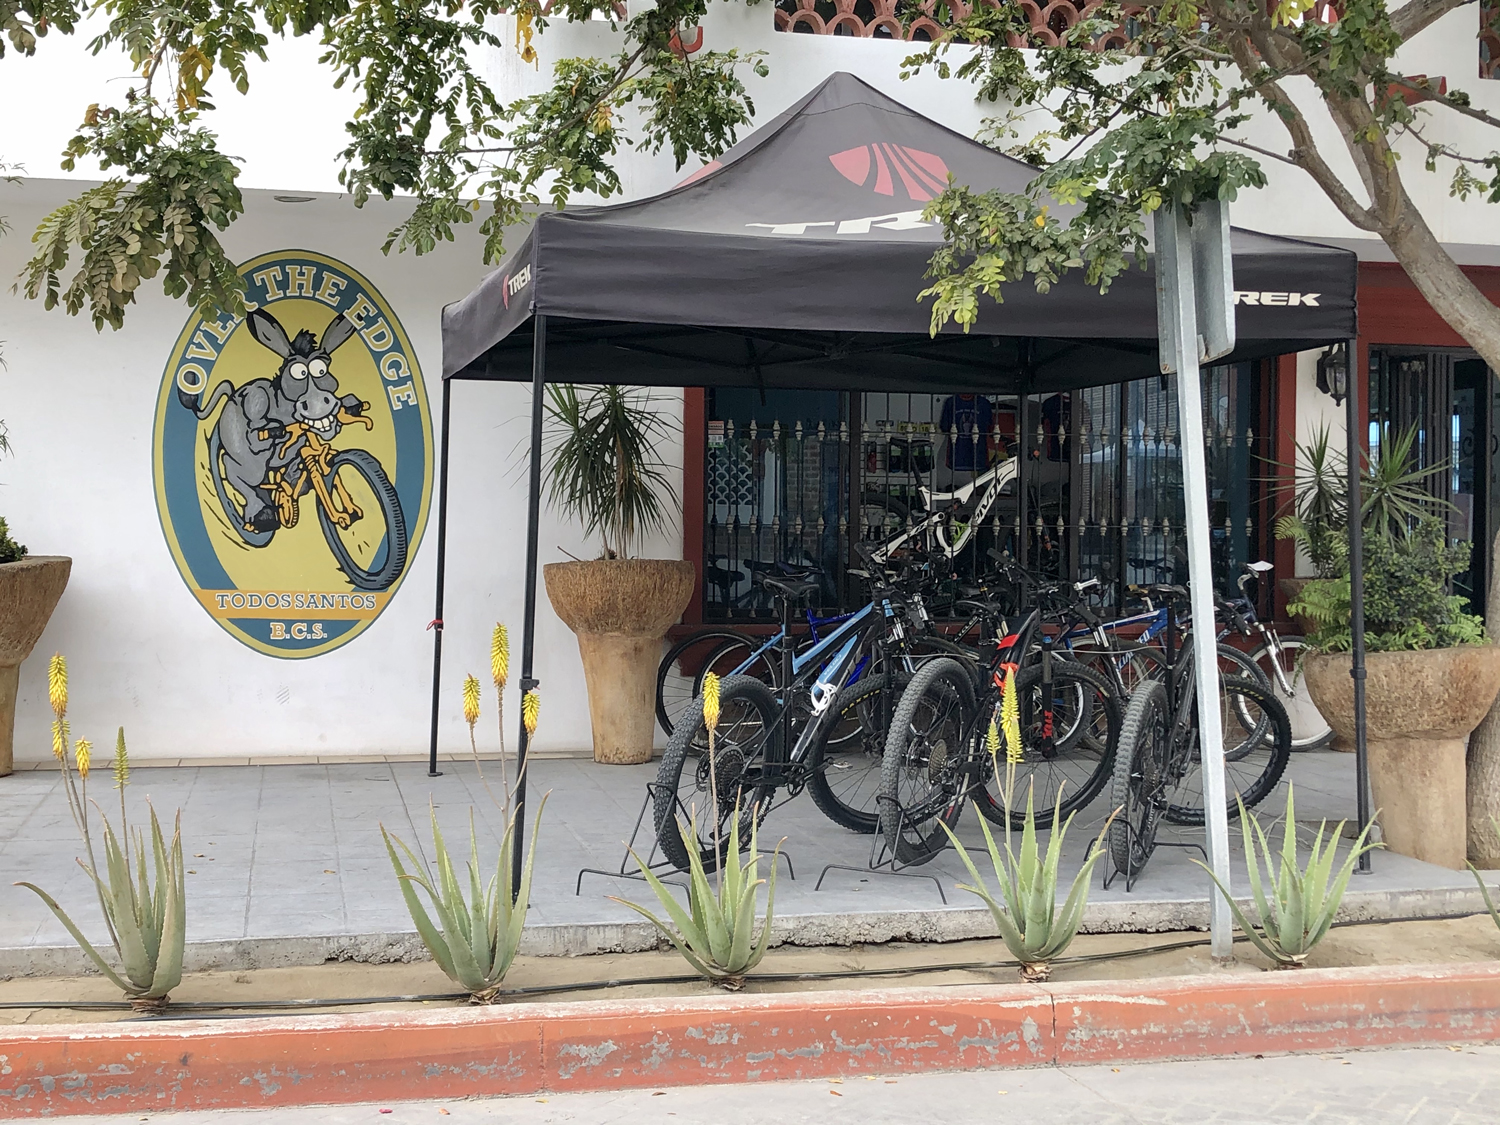 Over The Edge bike shop in Todos Santos